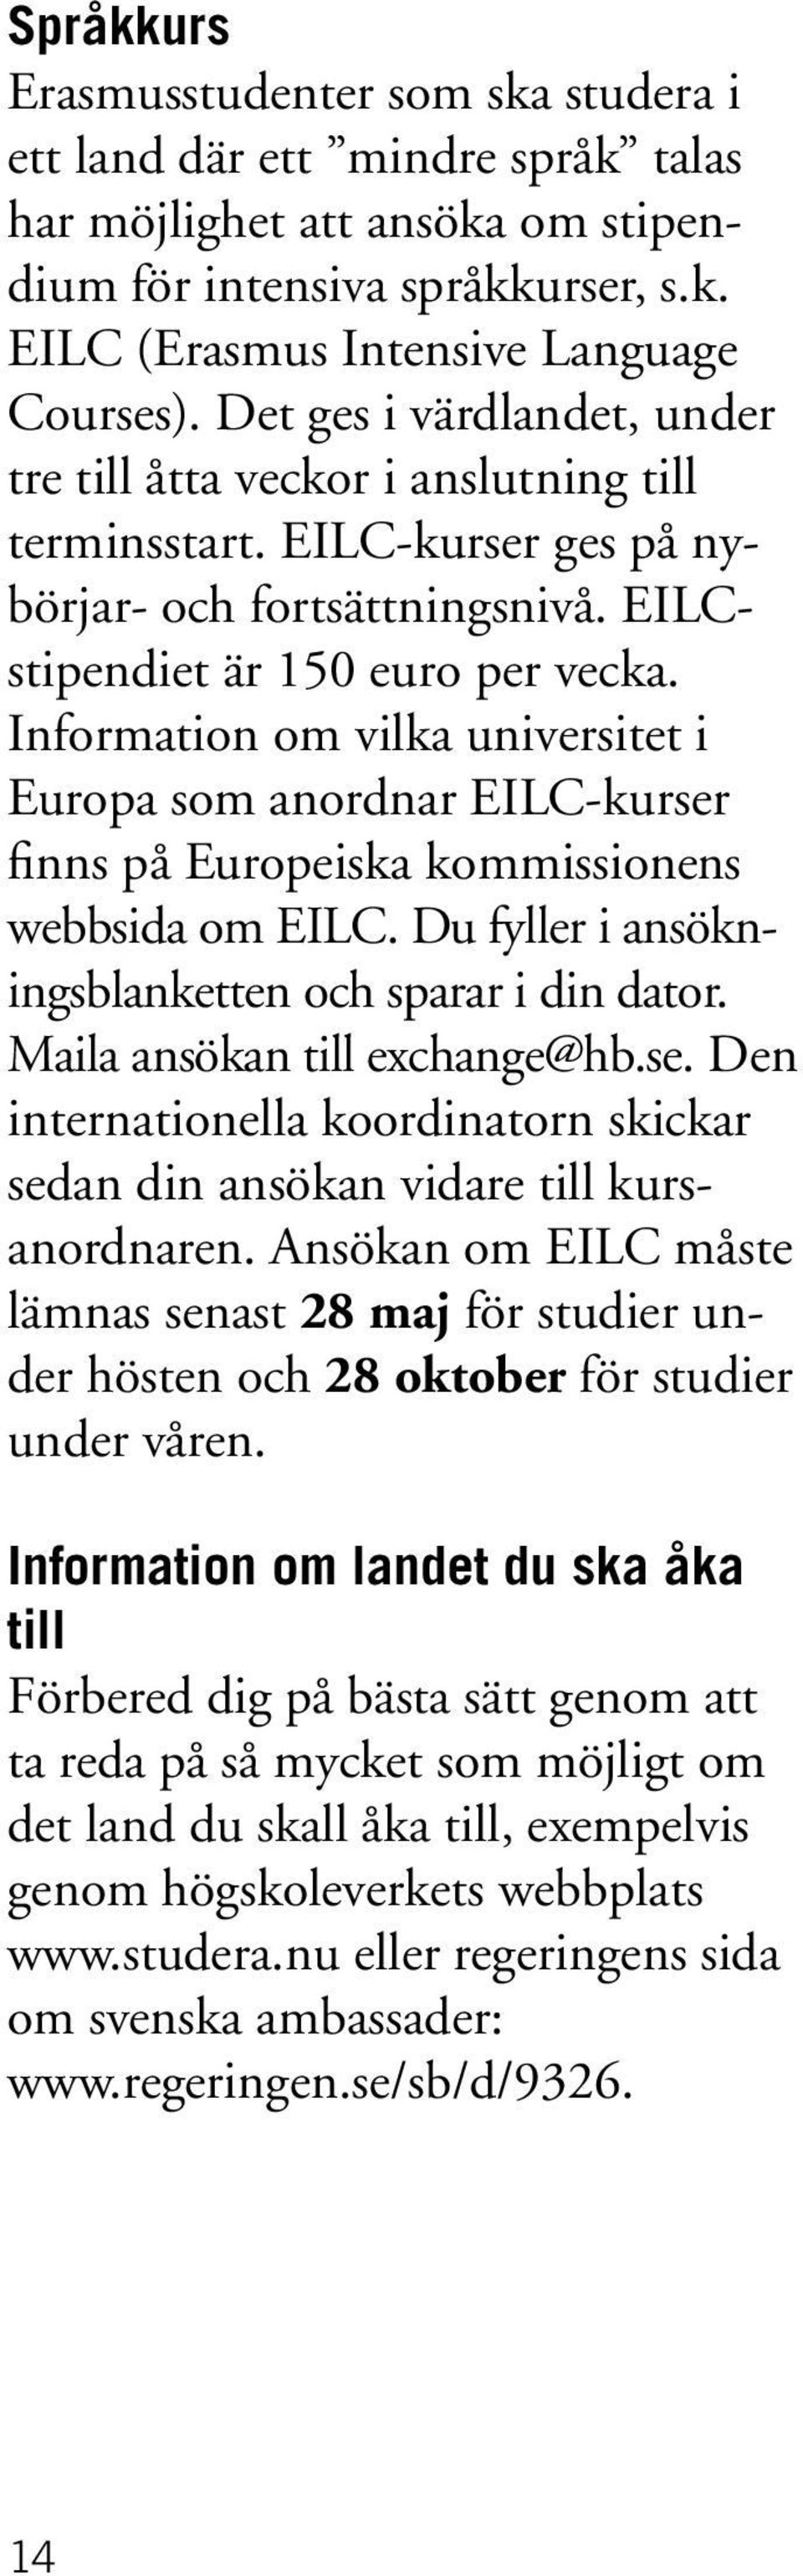 Information om vilka universitet i Europa som anordnar EILC-kurser finns på Europeiska kommissionens webbsida om EILC. Du fyller i ansökningsblanketten och sparar i din dator.